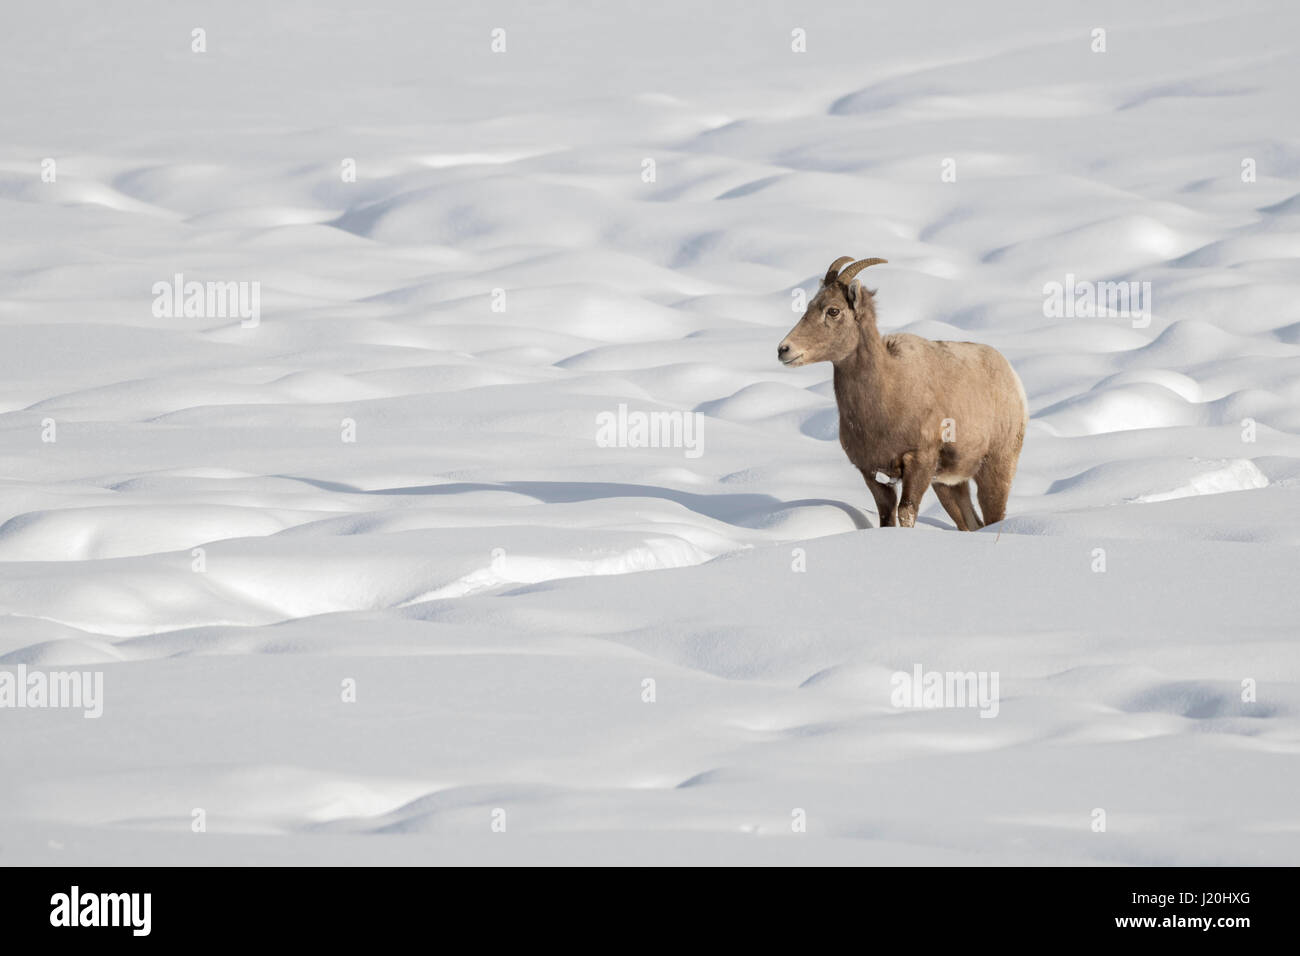 / Dickhornschaf borrego cimarrón (Ovis canadensis ), hembra en invierno, en terrenos cubiertos de nieve, siguiendo una pista, área de Yellowstone, Wyoming, Estados Unidos. Foto de stock